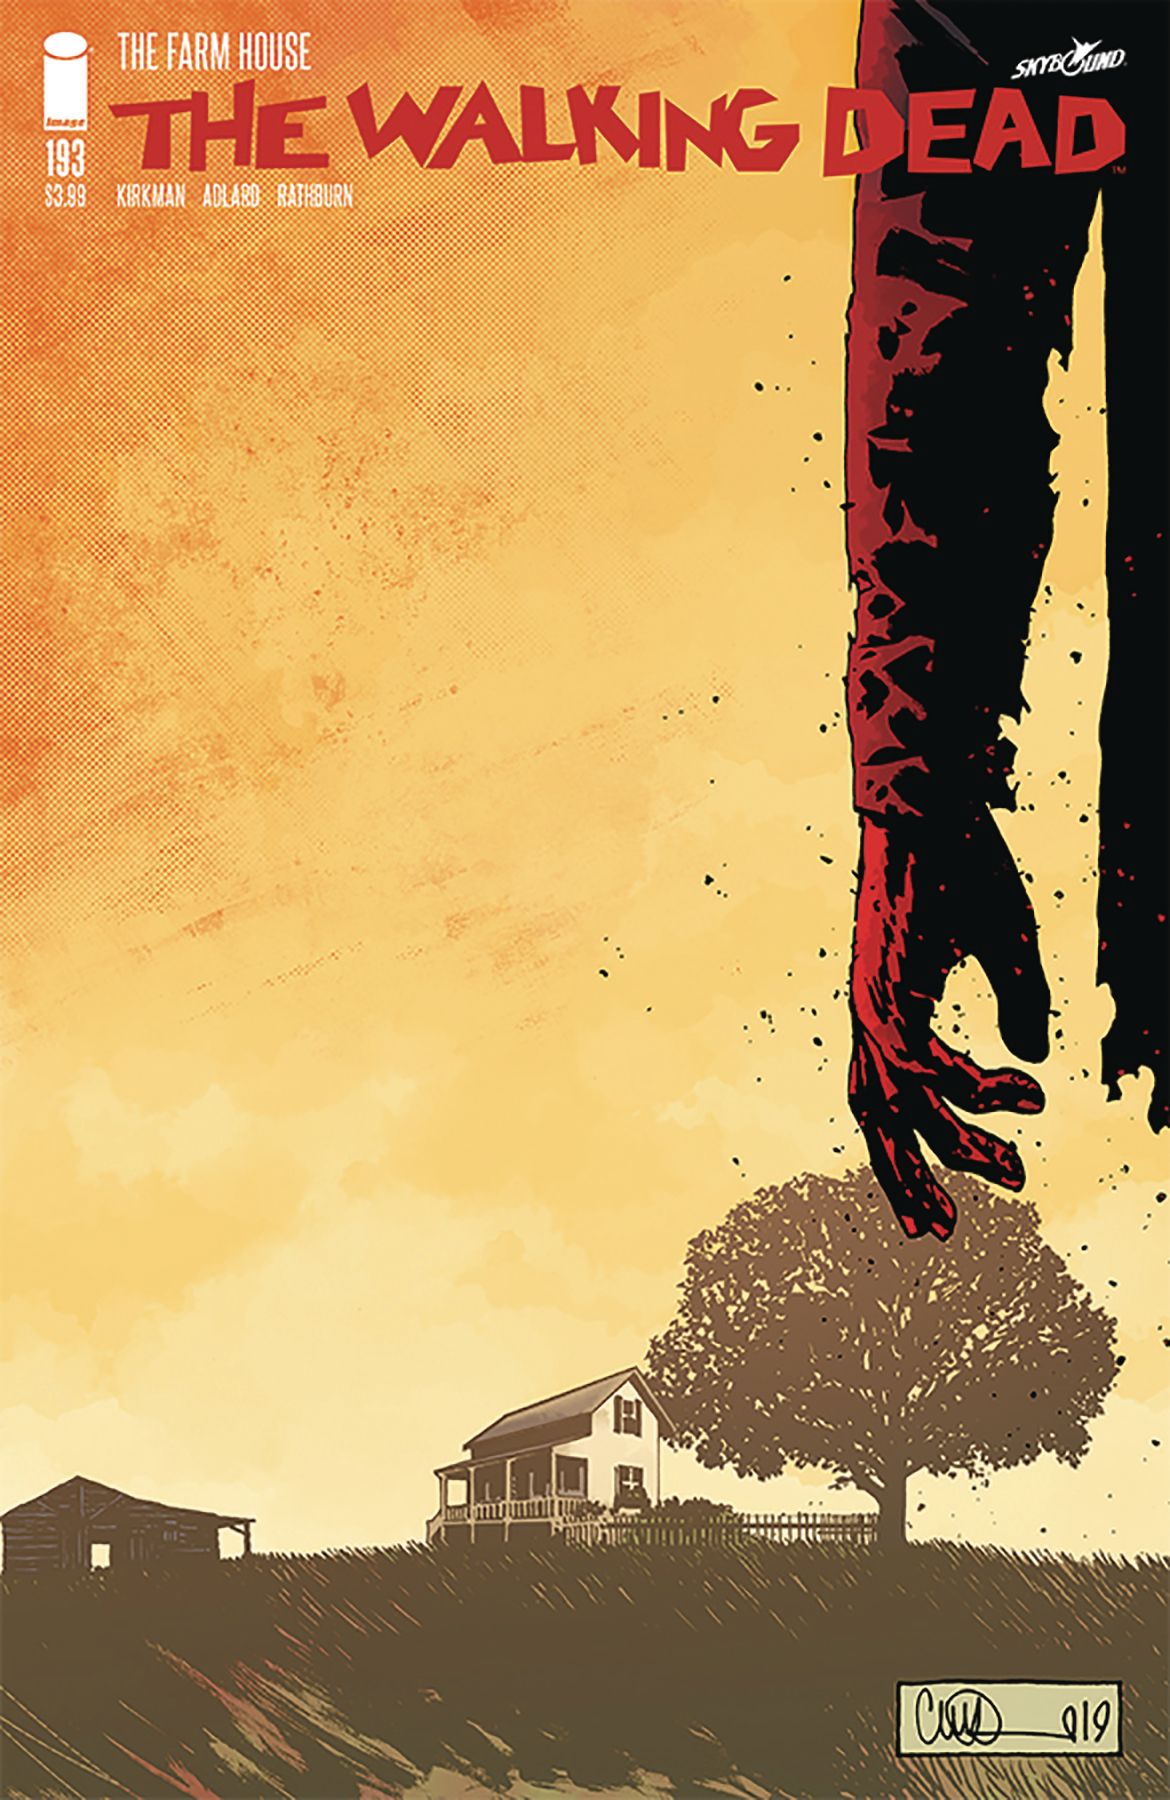 The Walking Dead #193 Comic